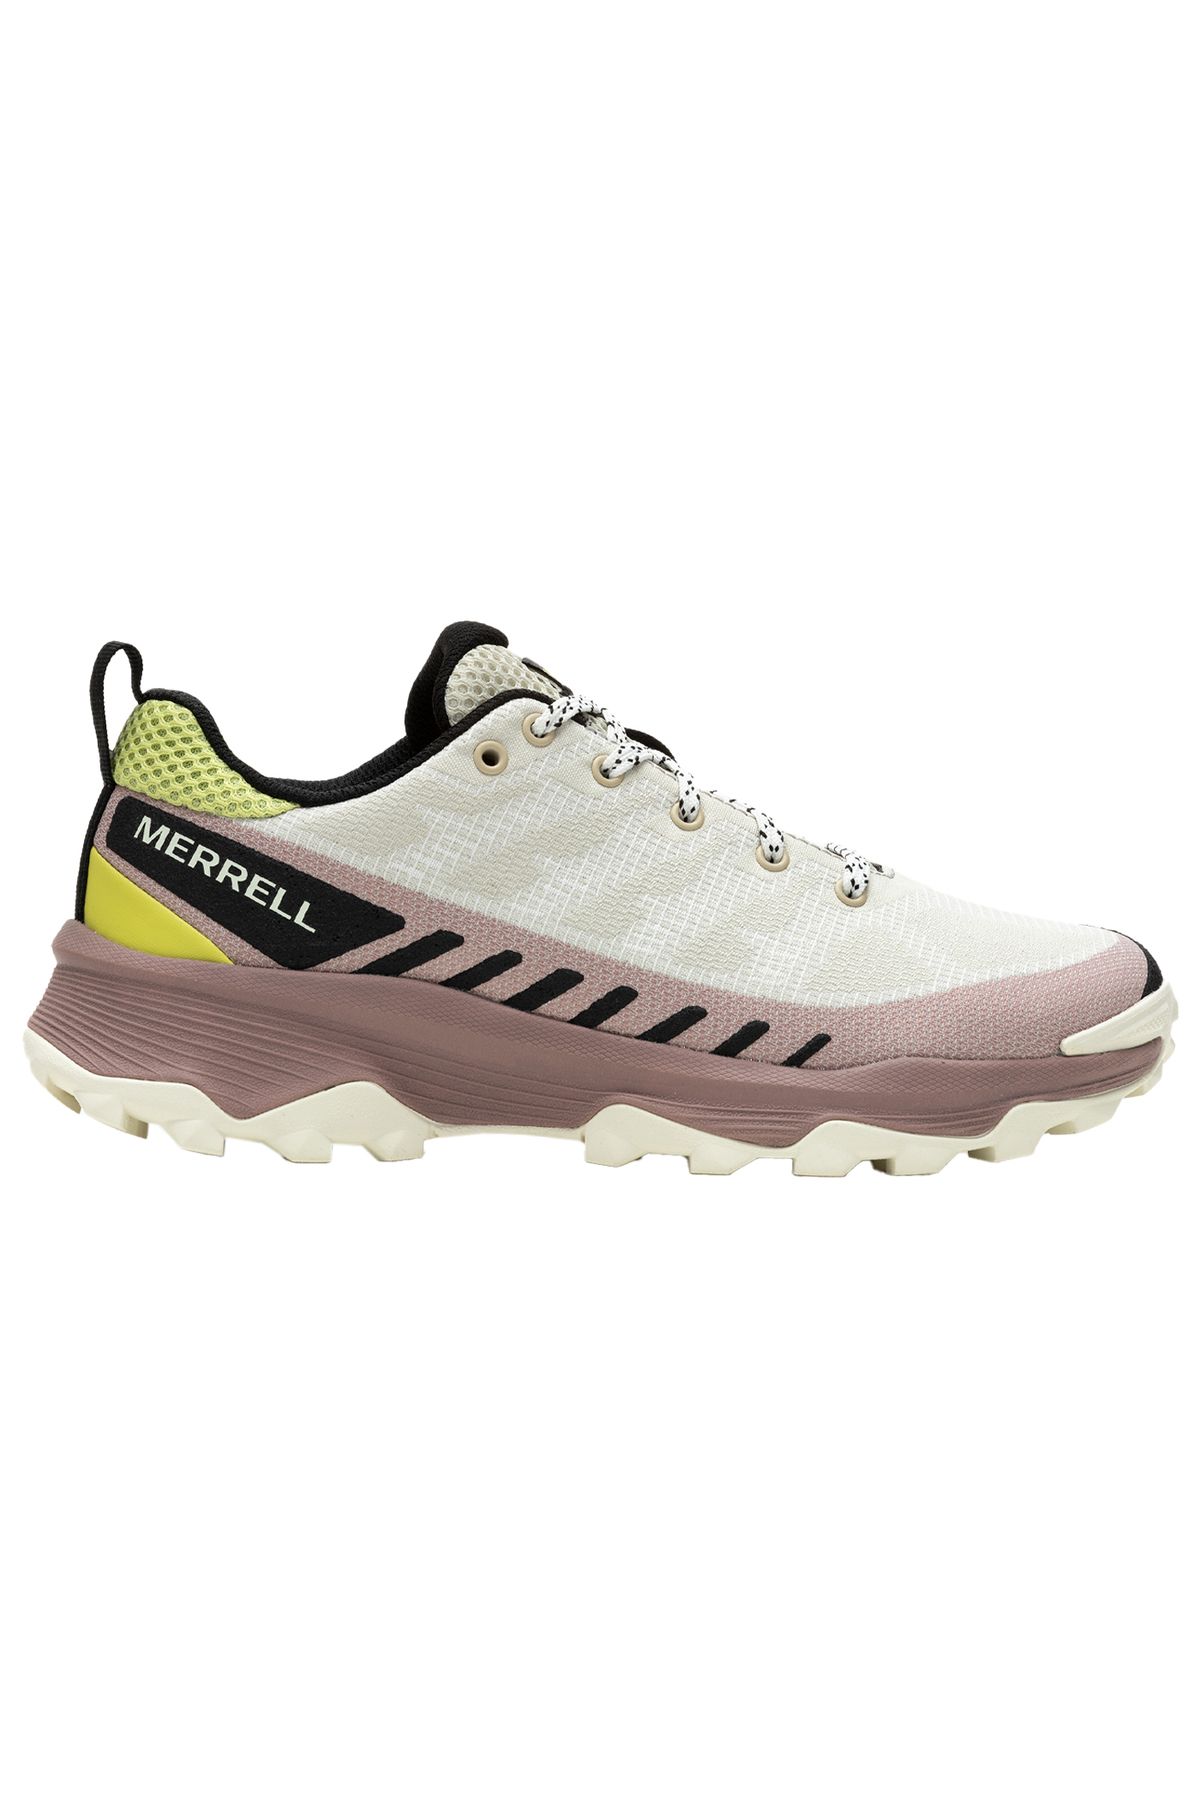 Merrell Speed Eco Kadın Koşu Ayakkabısı